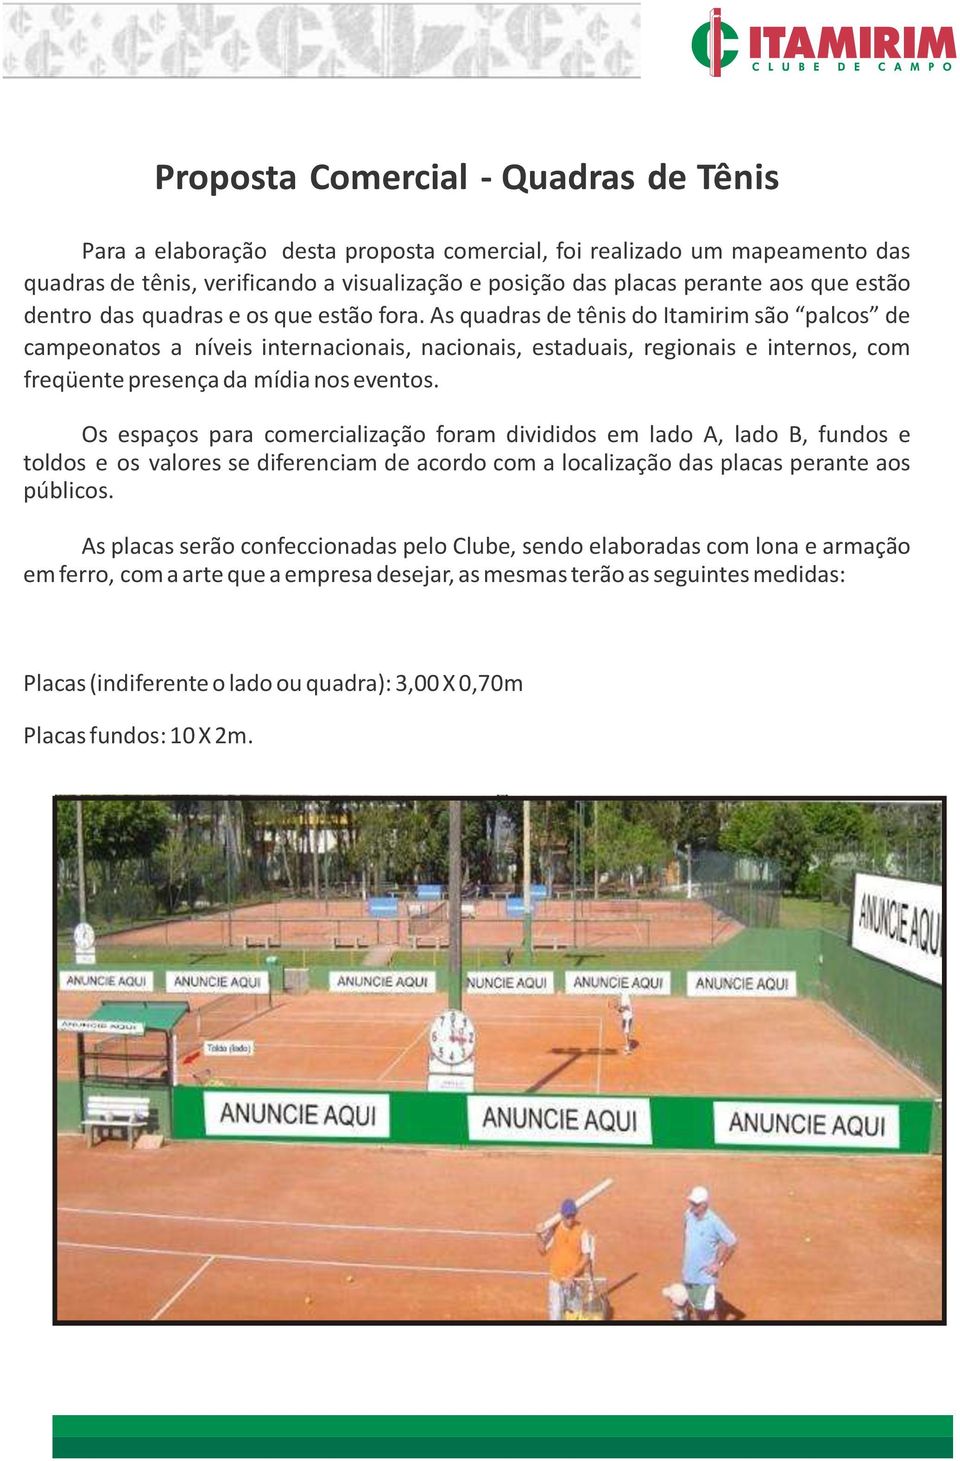 As quadras de tênis do Itamirim são palcos de campeonatos a níveis internacionais, nacionais, estaduais, regionais e internos, com freqüente presença da mídia nos eventos.